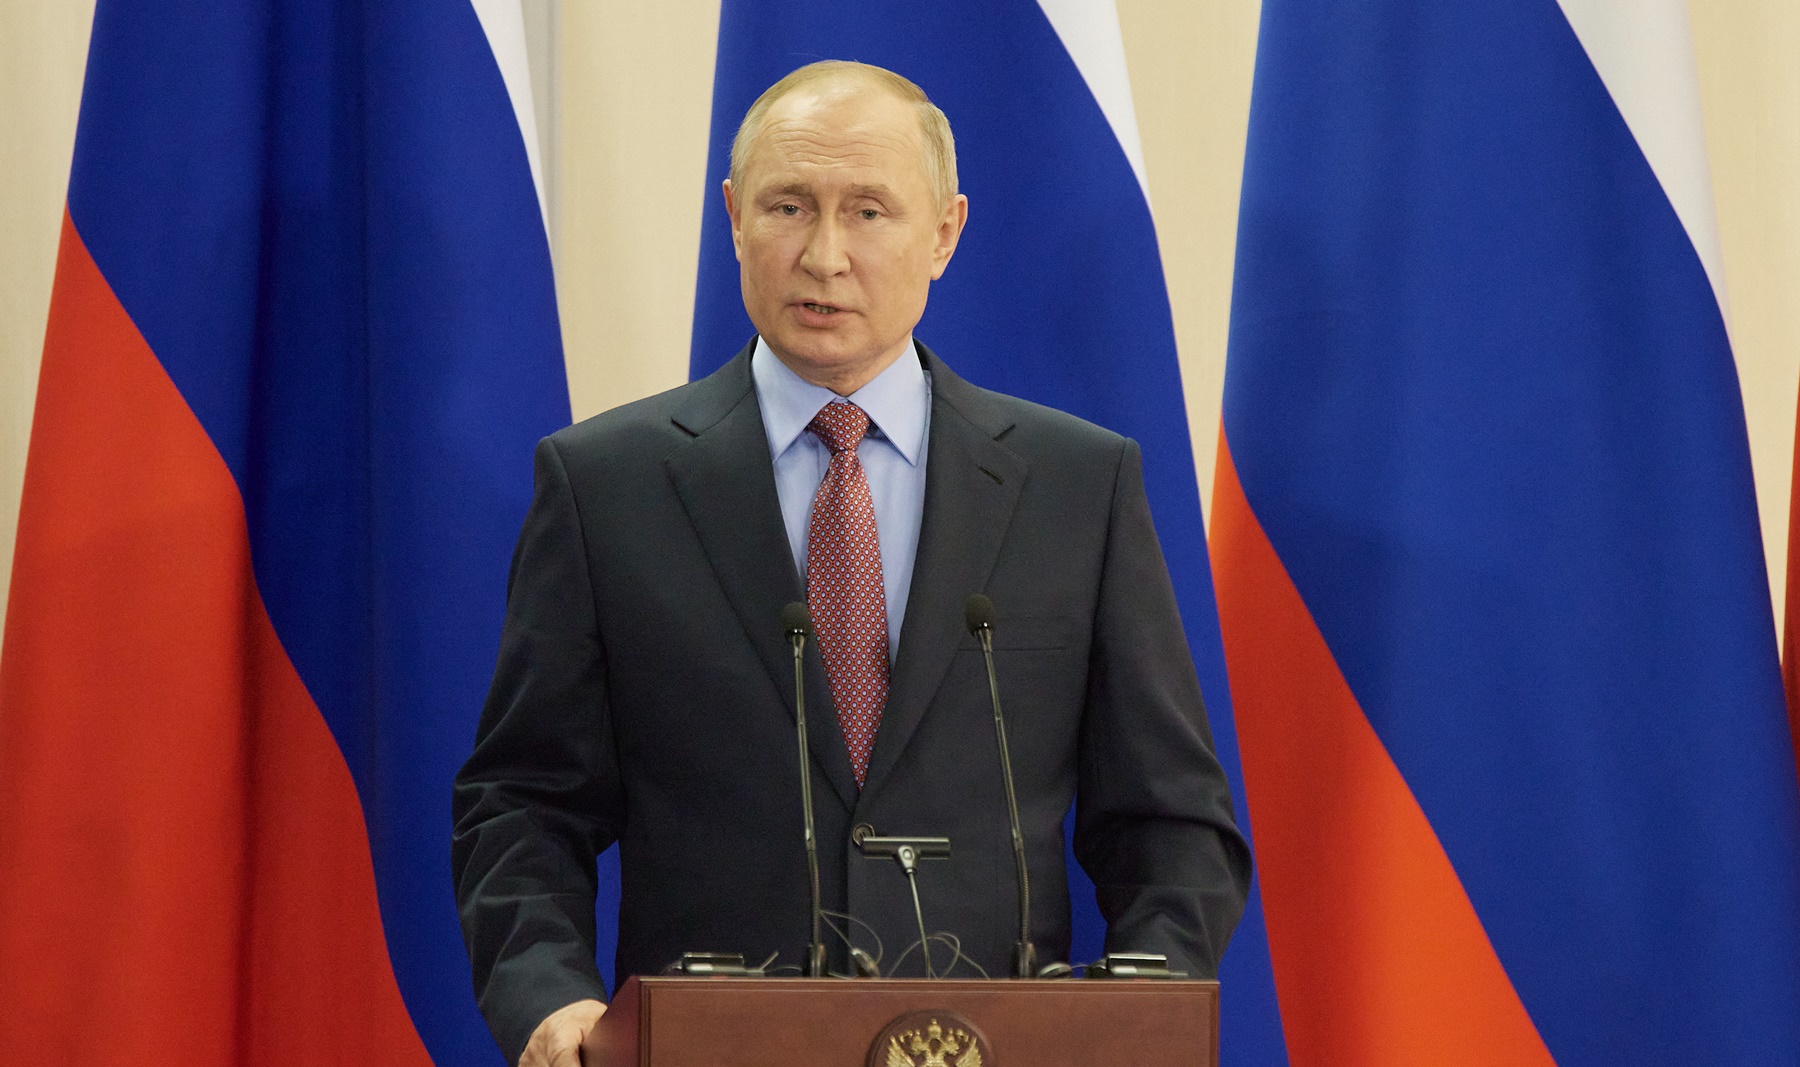 Πούτιν – Σόλτς πόλεμος στην Ουκρανία: Η προκλητική δήλωση του Ρώσου